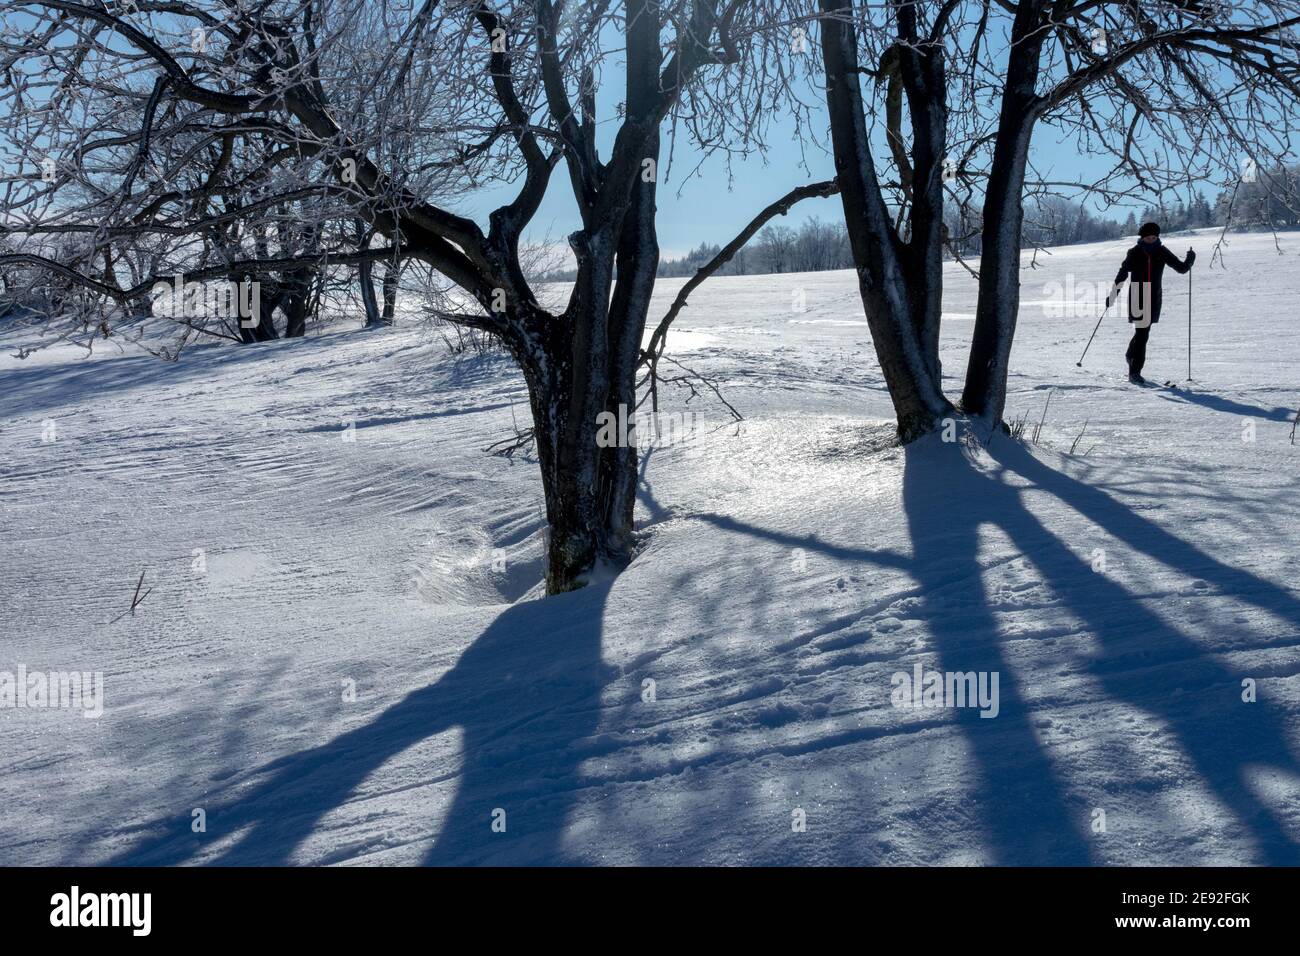 Singola persona sci di fondo in un paesaggio innevato illuminato d'inverno sole ombra alberi Foto Stock